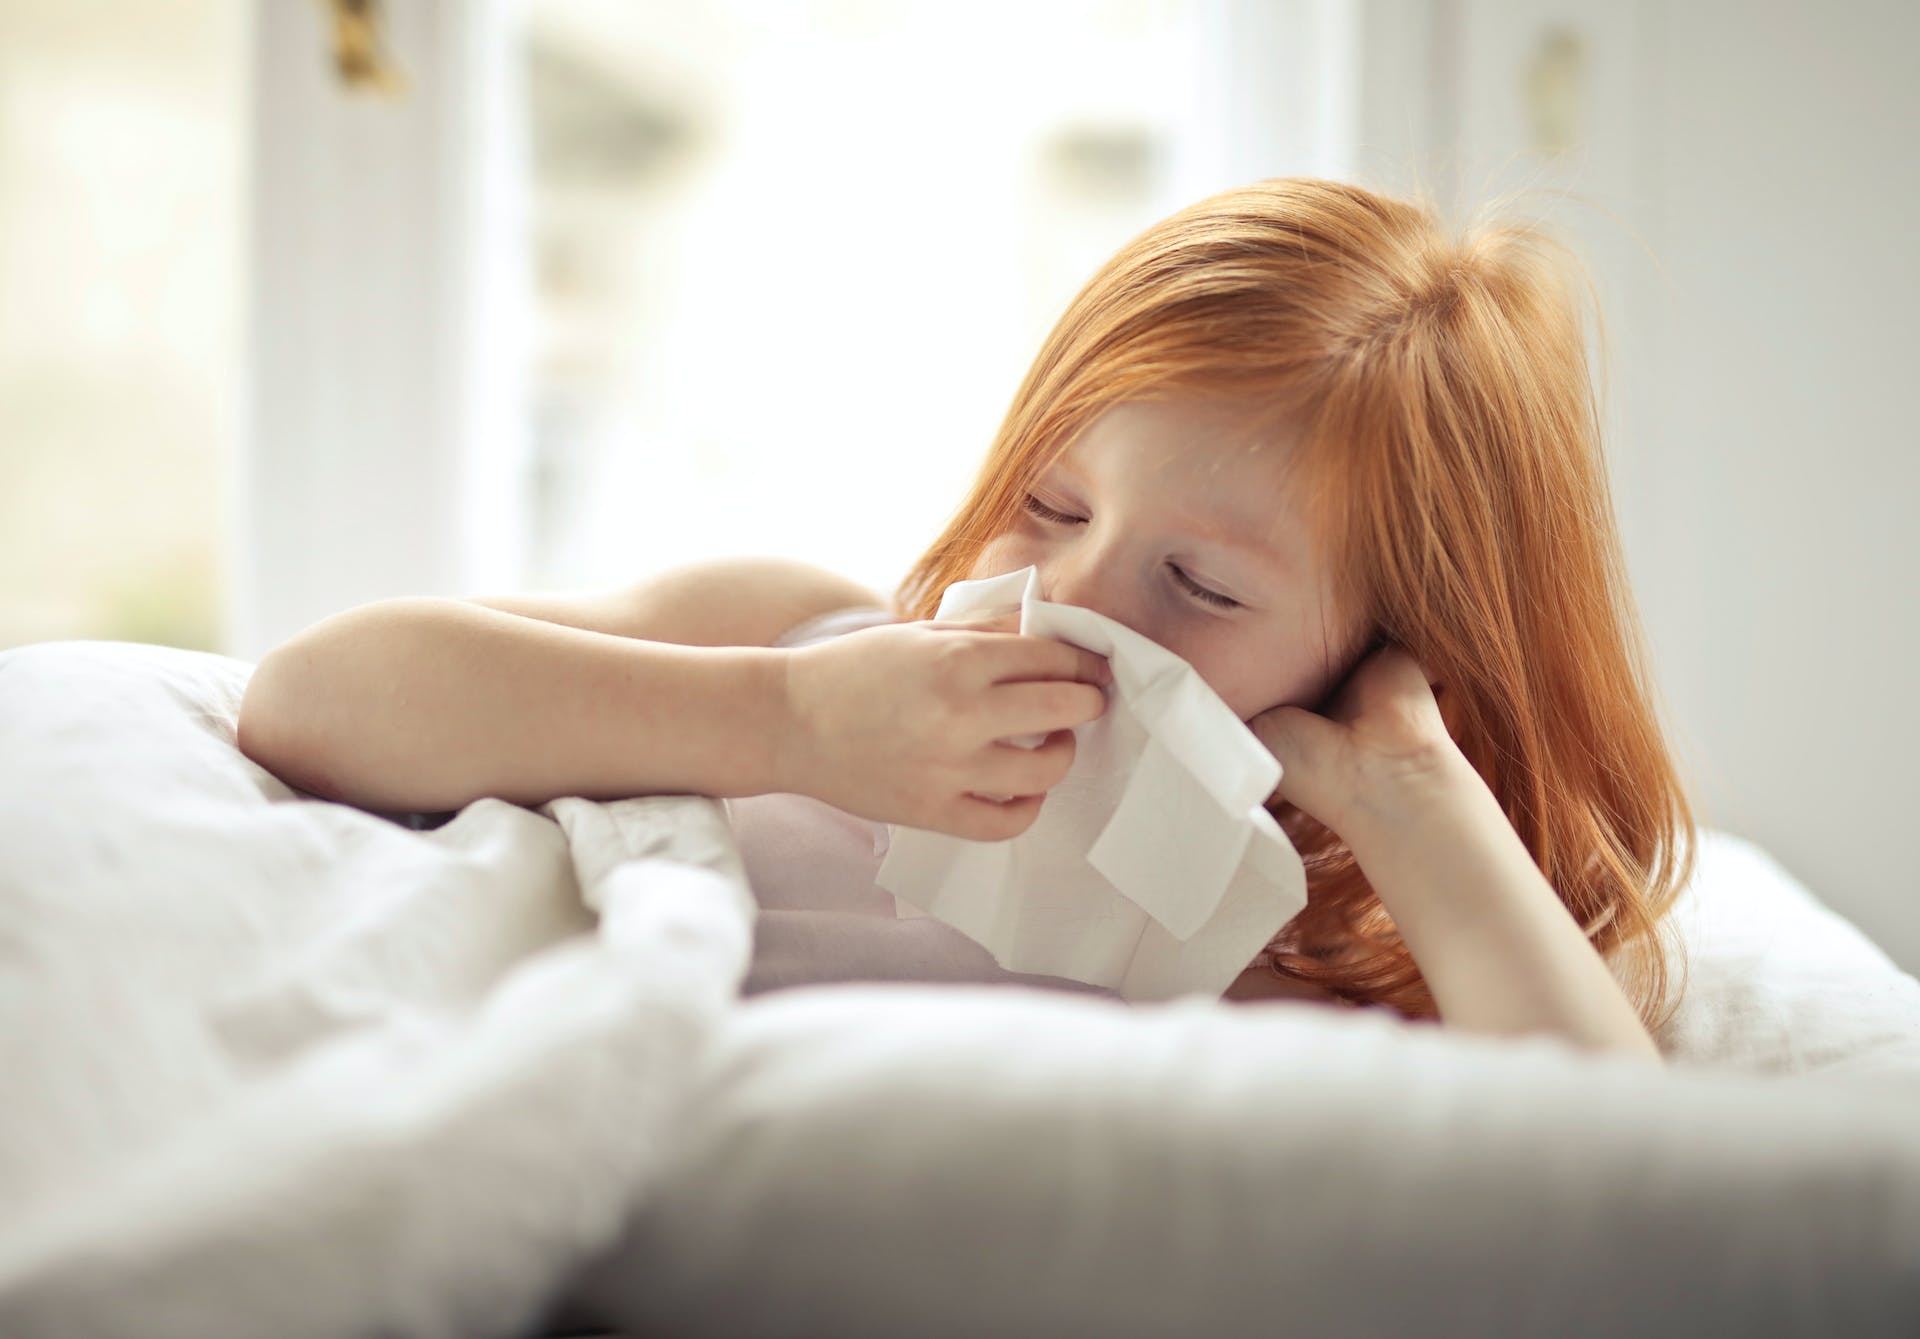 Kleines Mädchen wischt sich die Nase mit einem Taschentuch ab | Quelle: Pexels